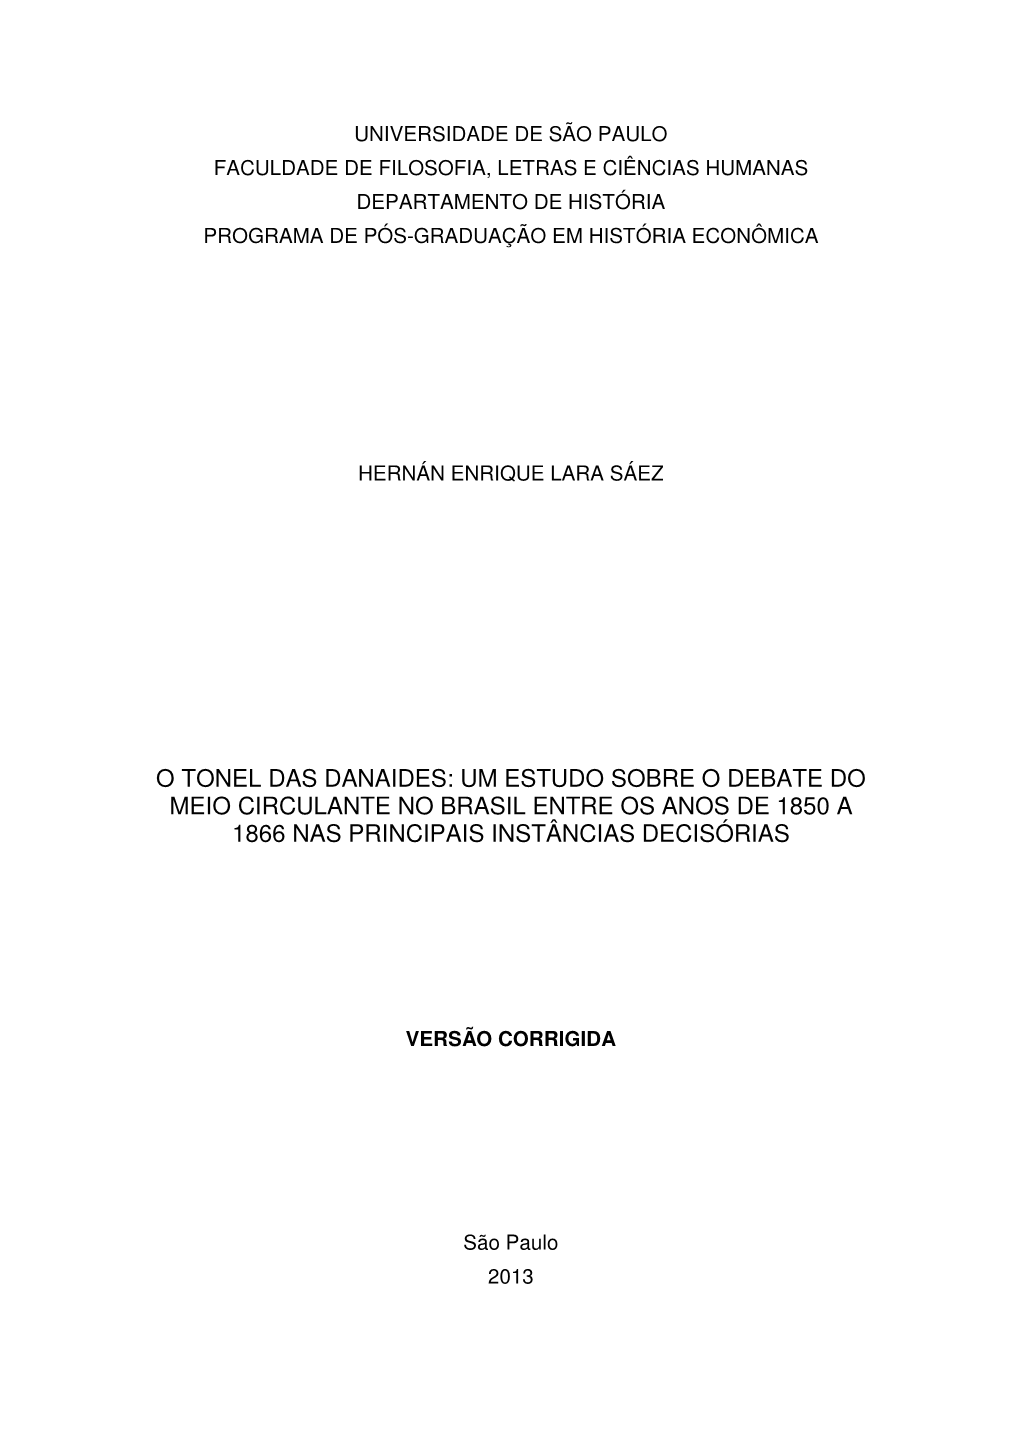 O Tonel Das Danaides: Um Estudo Sobre O Debate Do Meio Circulante No Brasil Entre Os Anos De 1850 a 1866 Nas Principais Instâncias Decisórias